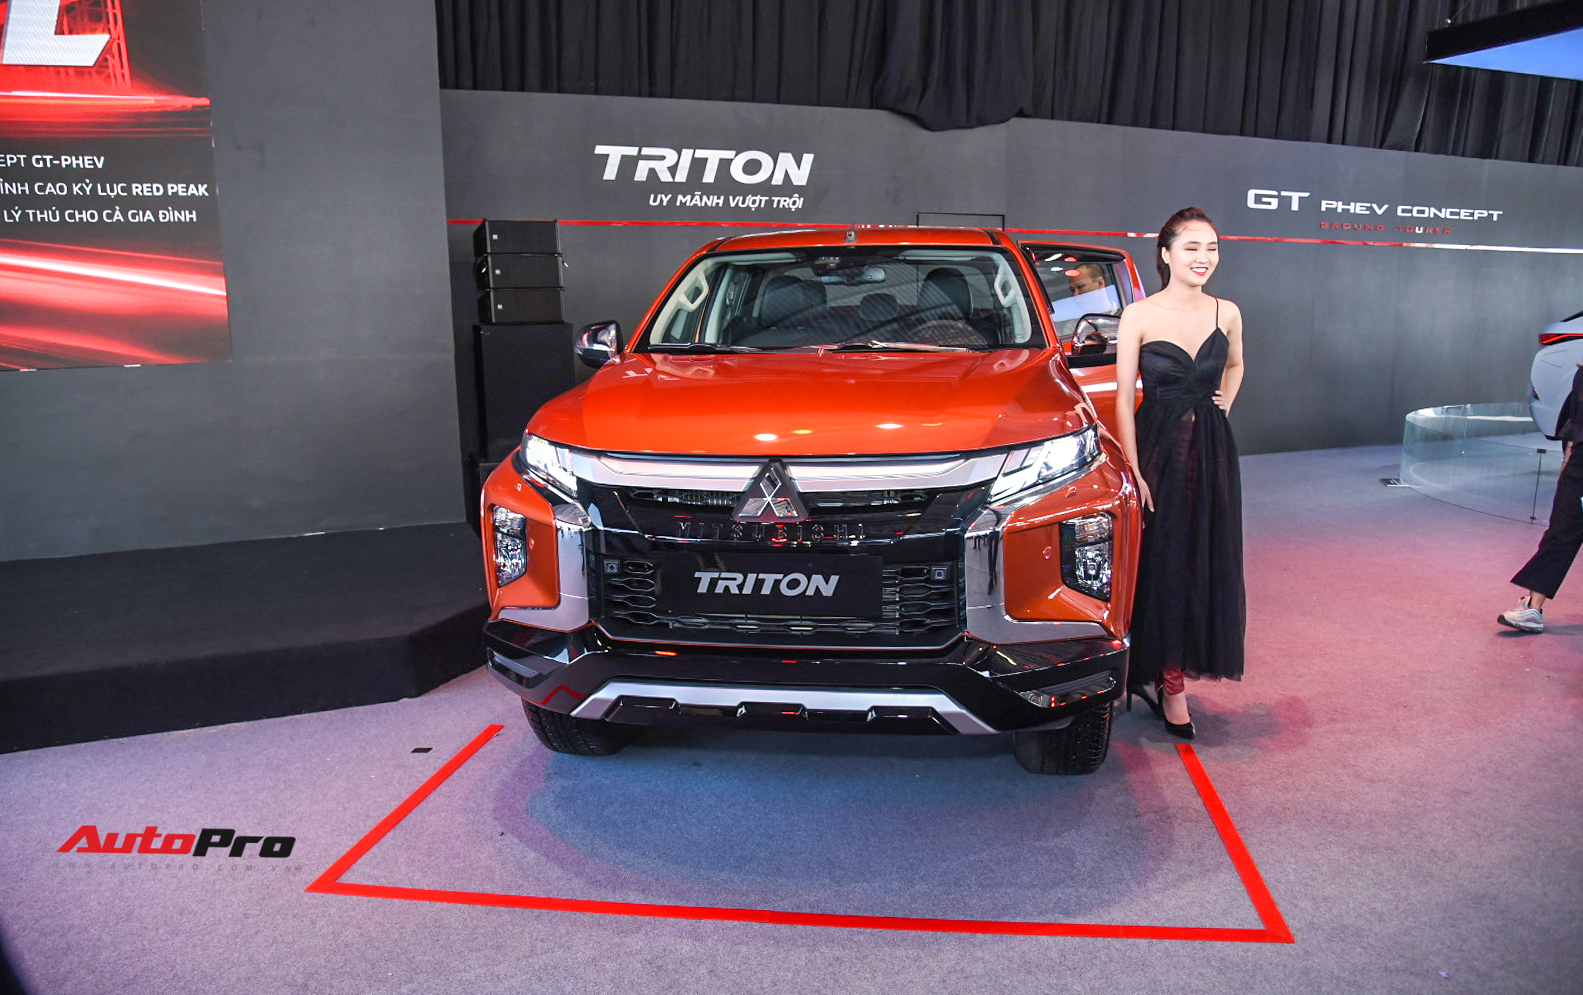 Mitsubishi Triton 2020 full option ra mắt Việt Nam với 5 phiên bản, giá cao nhất 865 triệu đồng - Ảnh 1.